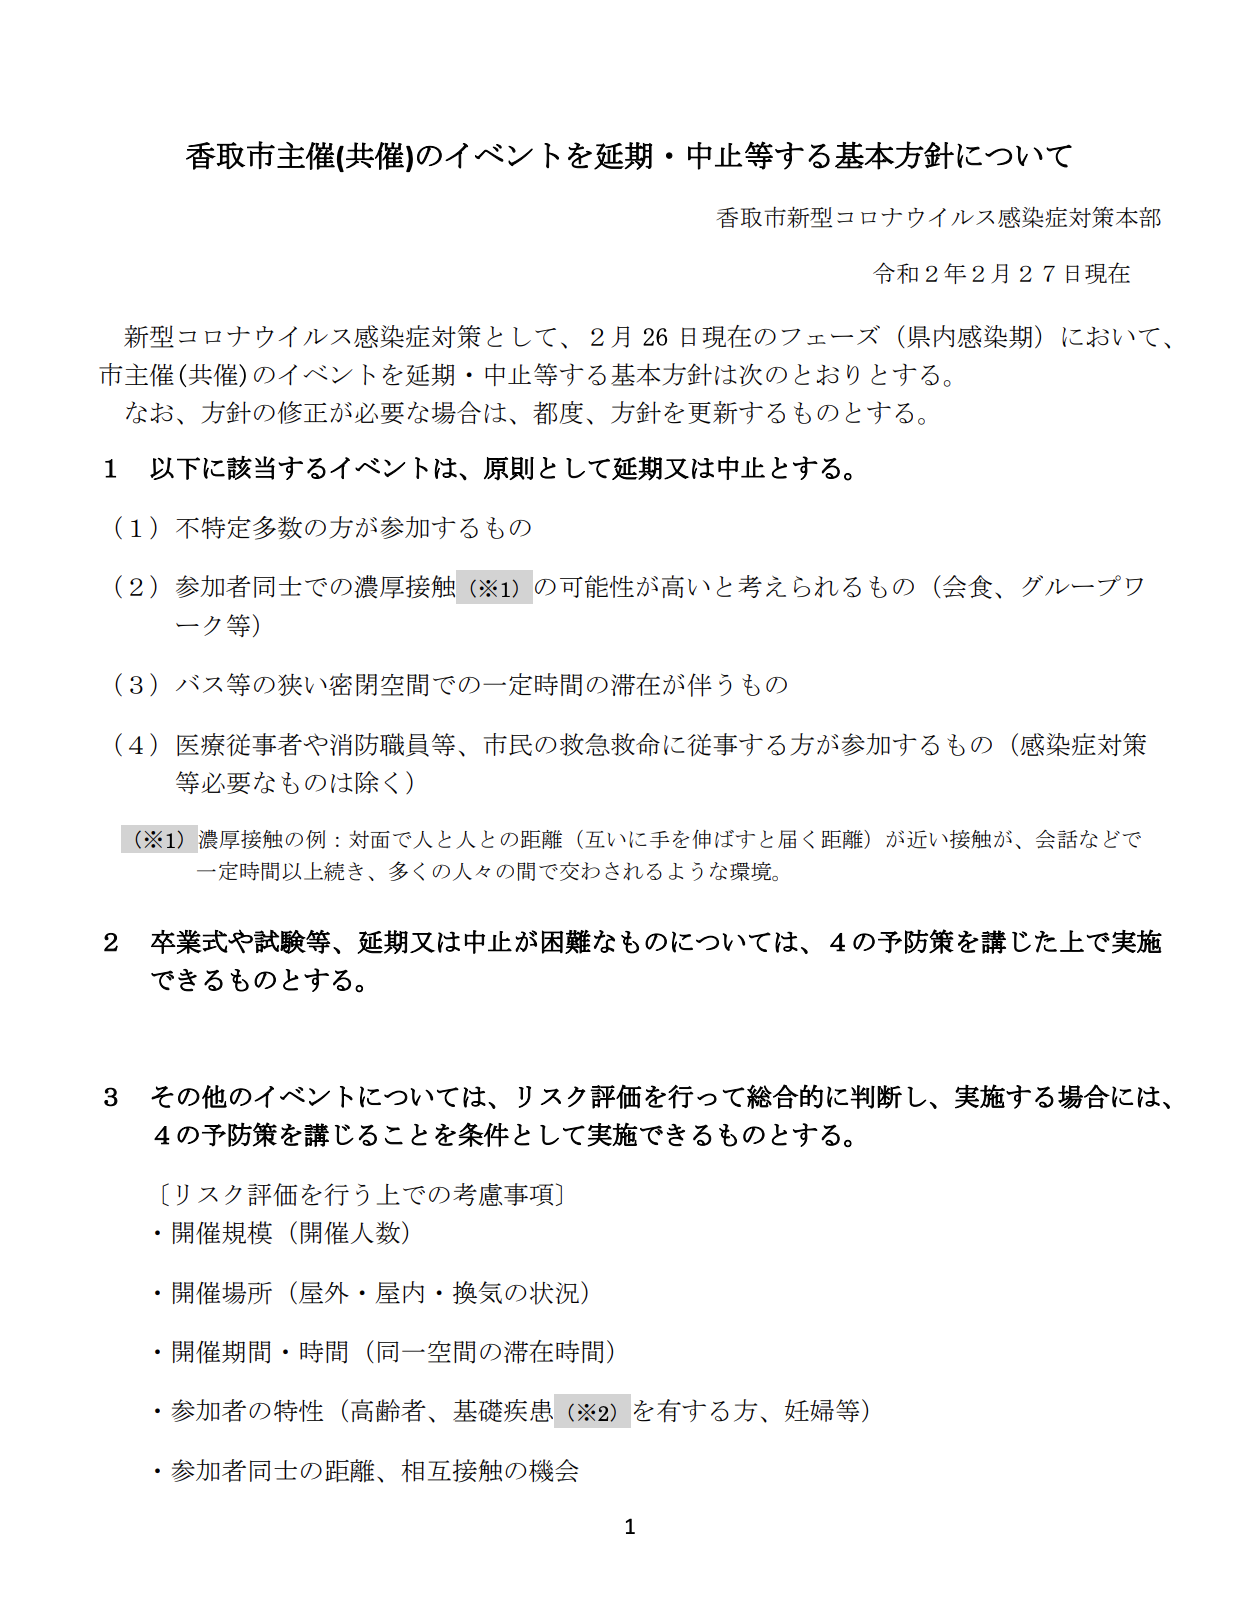 香取市主催(共催)のイベントを延期・中止等する基本方針について2